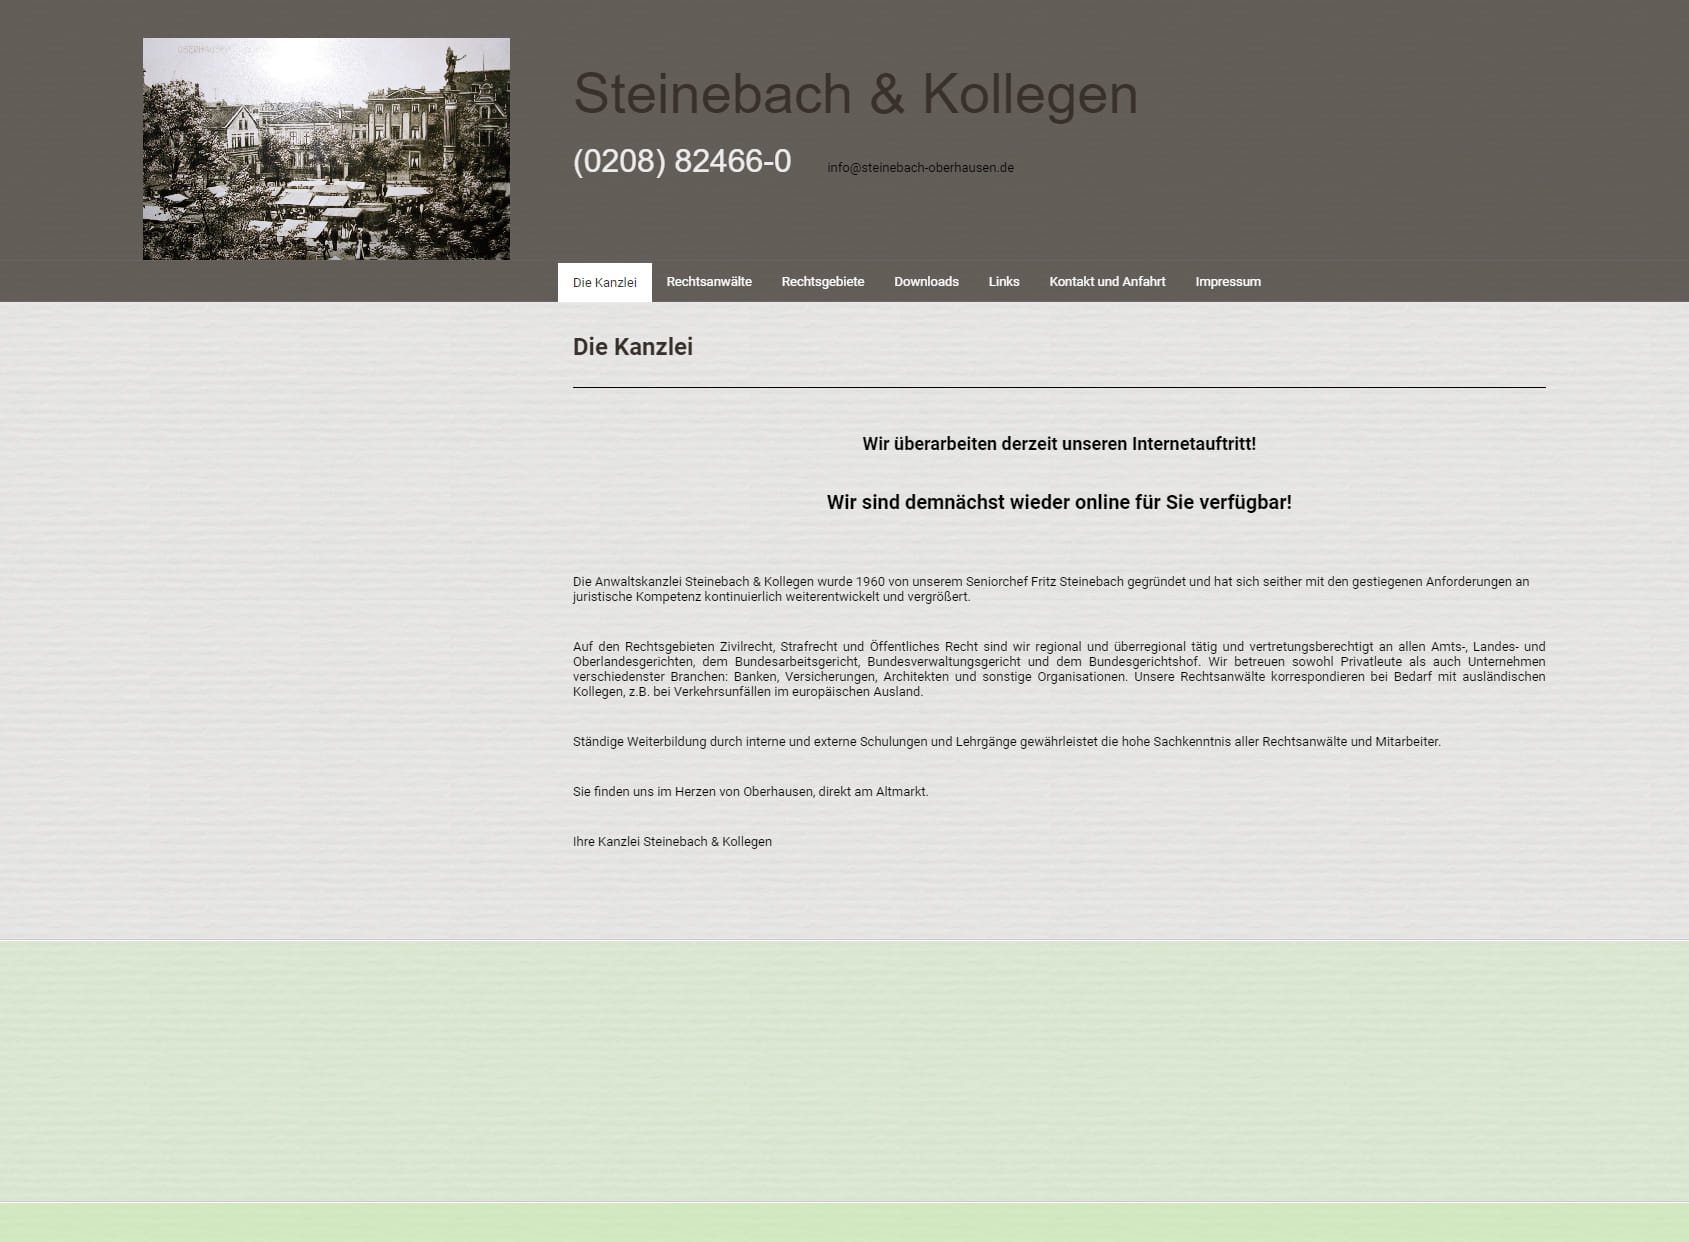 Steinebach & colleagues